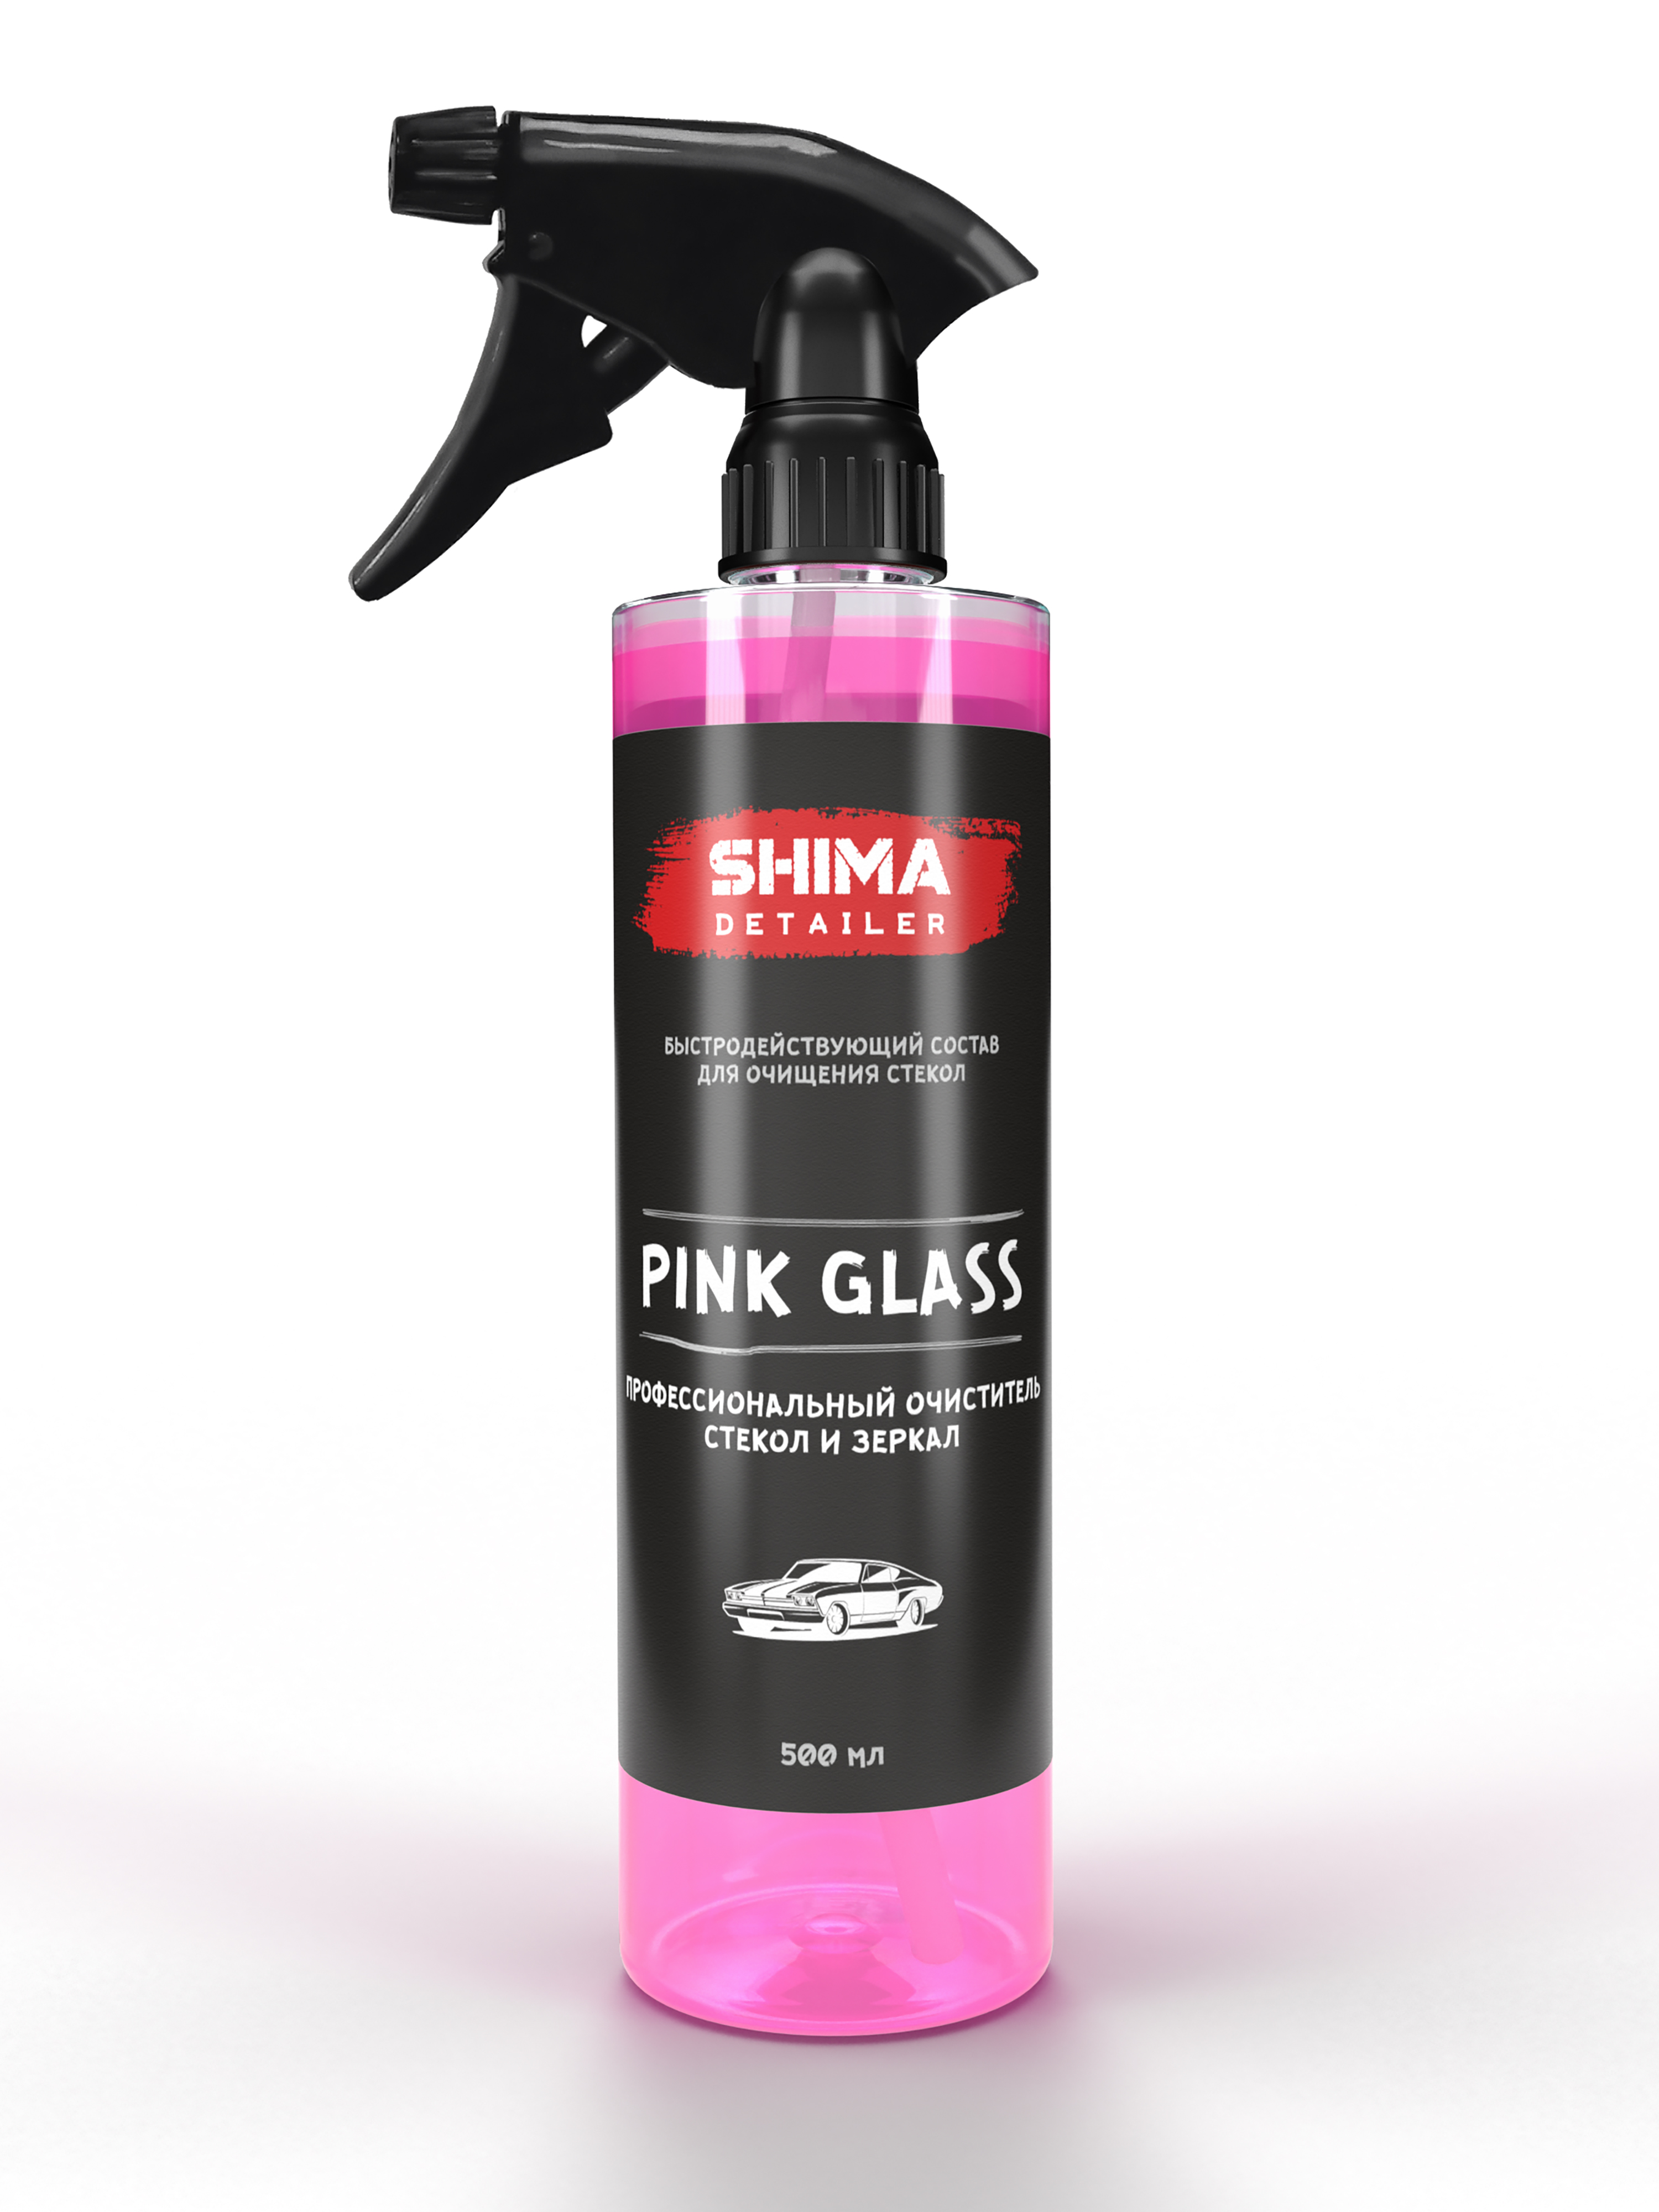 Профессиональный очиститель стекол и зеркал SHIMA PINK GLASS, 500 мл